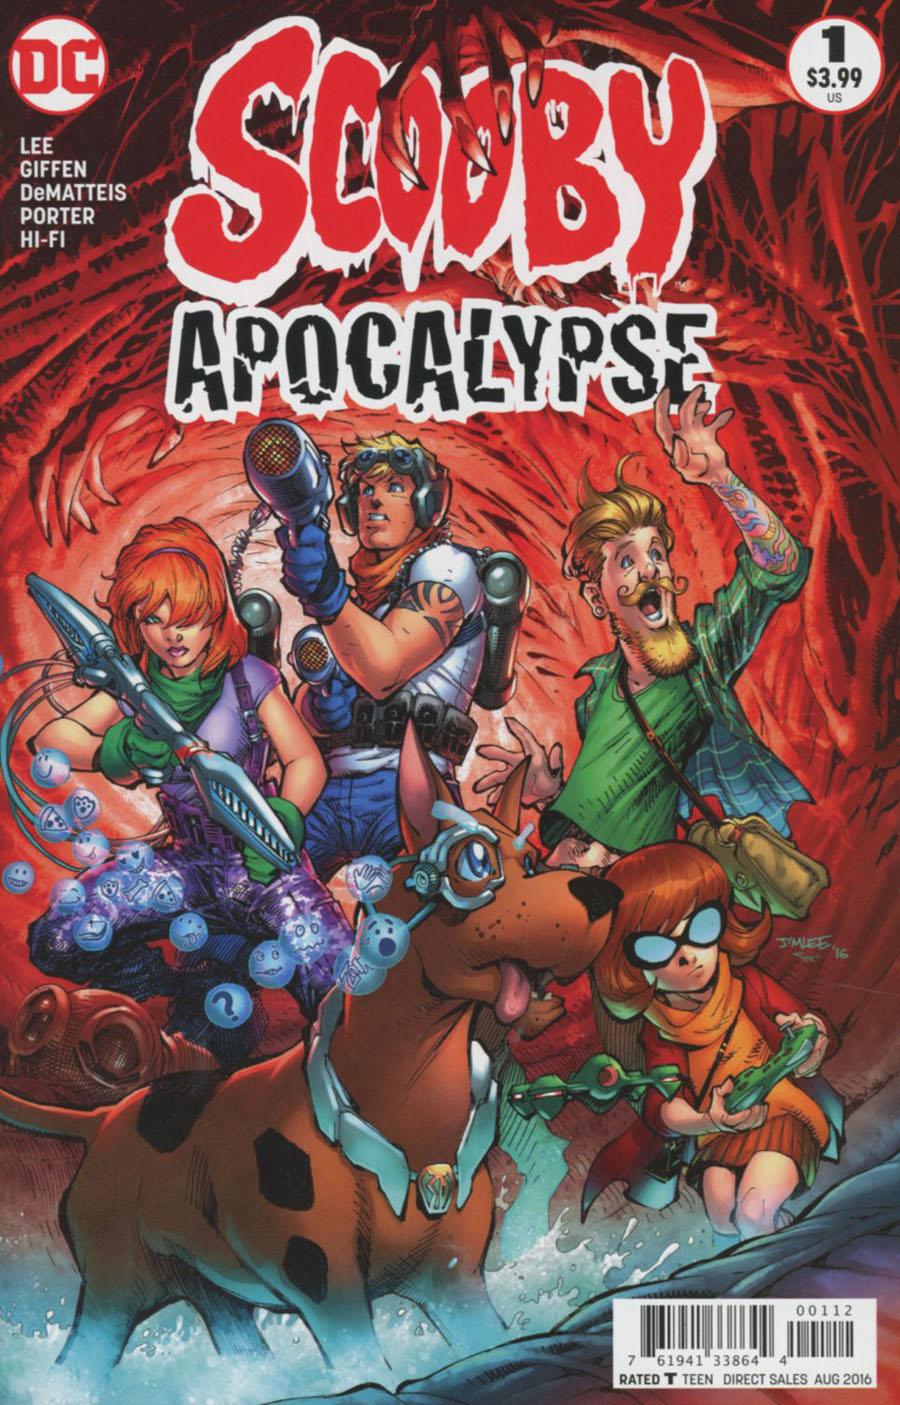 Scooby Apocalypse Vol. 1 #1